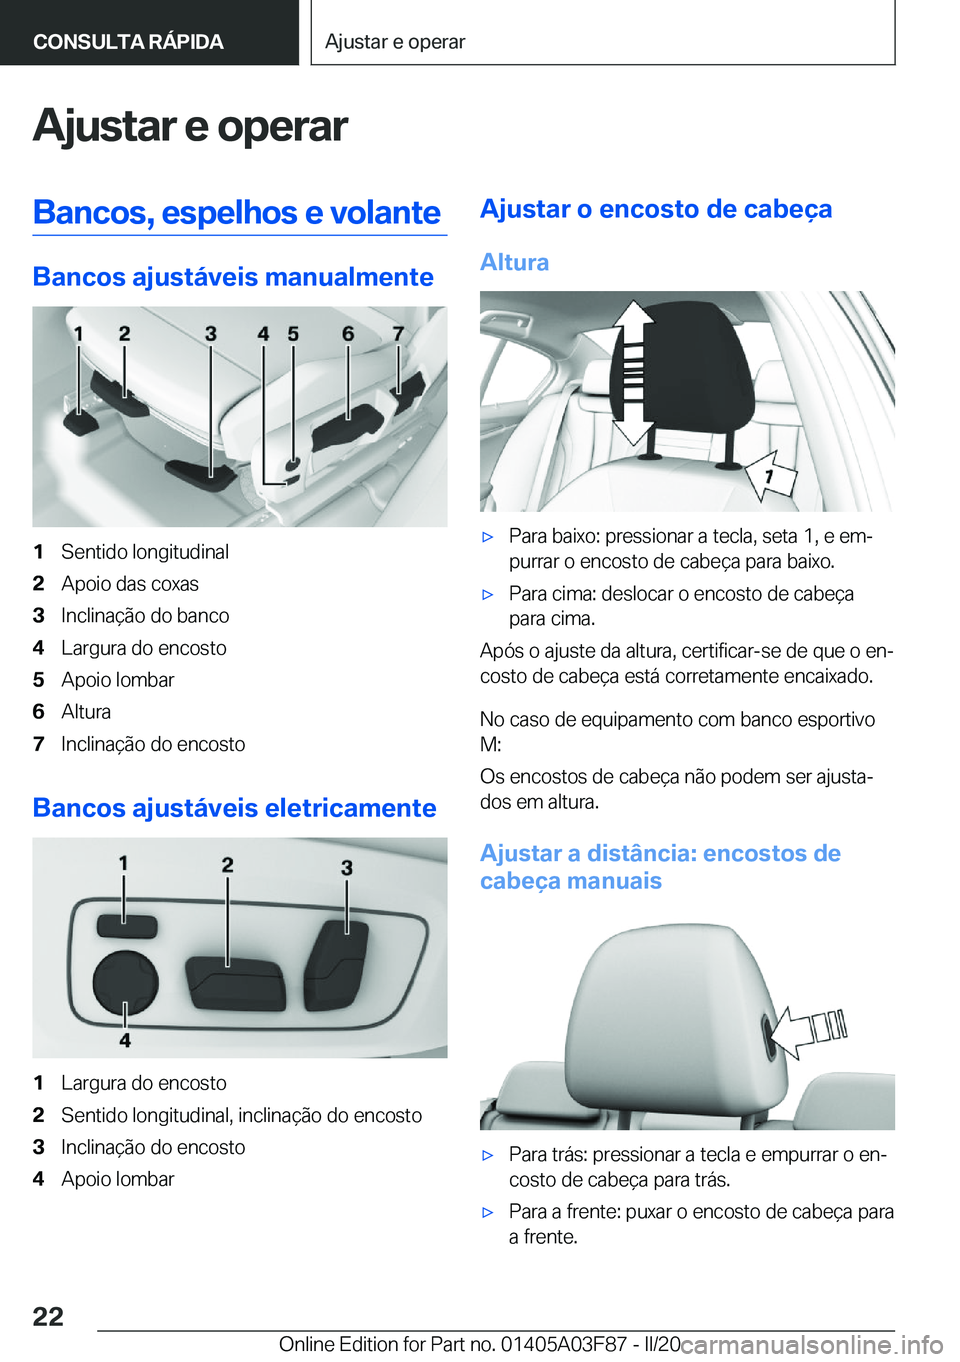 BMW 3 SERIES 2020  Manual do condutor (in Portuguese) �A�j�u�s�t�a�r��e��o�p�e�r�a�r�B�a�n�c�o�s�,��e�s�p�e�l�h�o�s��e��v�o�l�a�n�t�e
�B�a�n�c�o�s��a�j�u�s�t�á�v�e�i�s��m�a�n�u�a�l�m�e�n�t�e
�1�S�e�n�t�i�d�o��l�o�n�g�i�t�u�d�i�n�a�l�2�A�p�o�i�o�